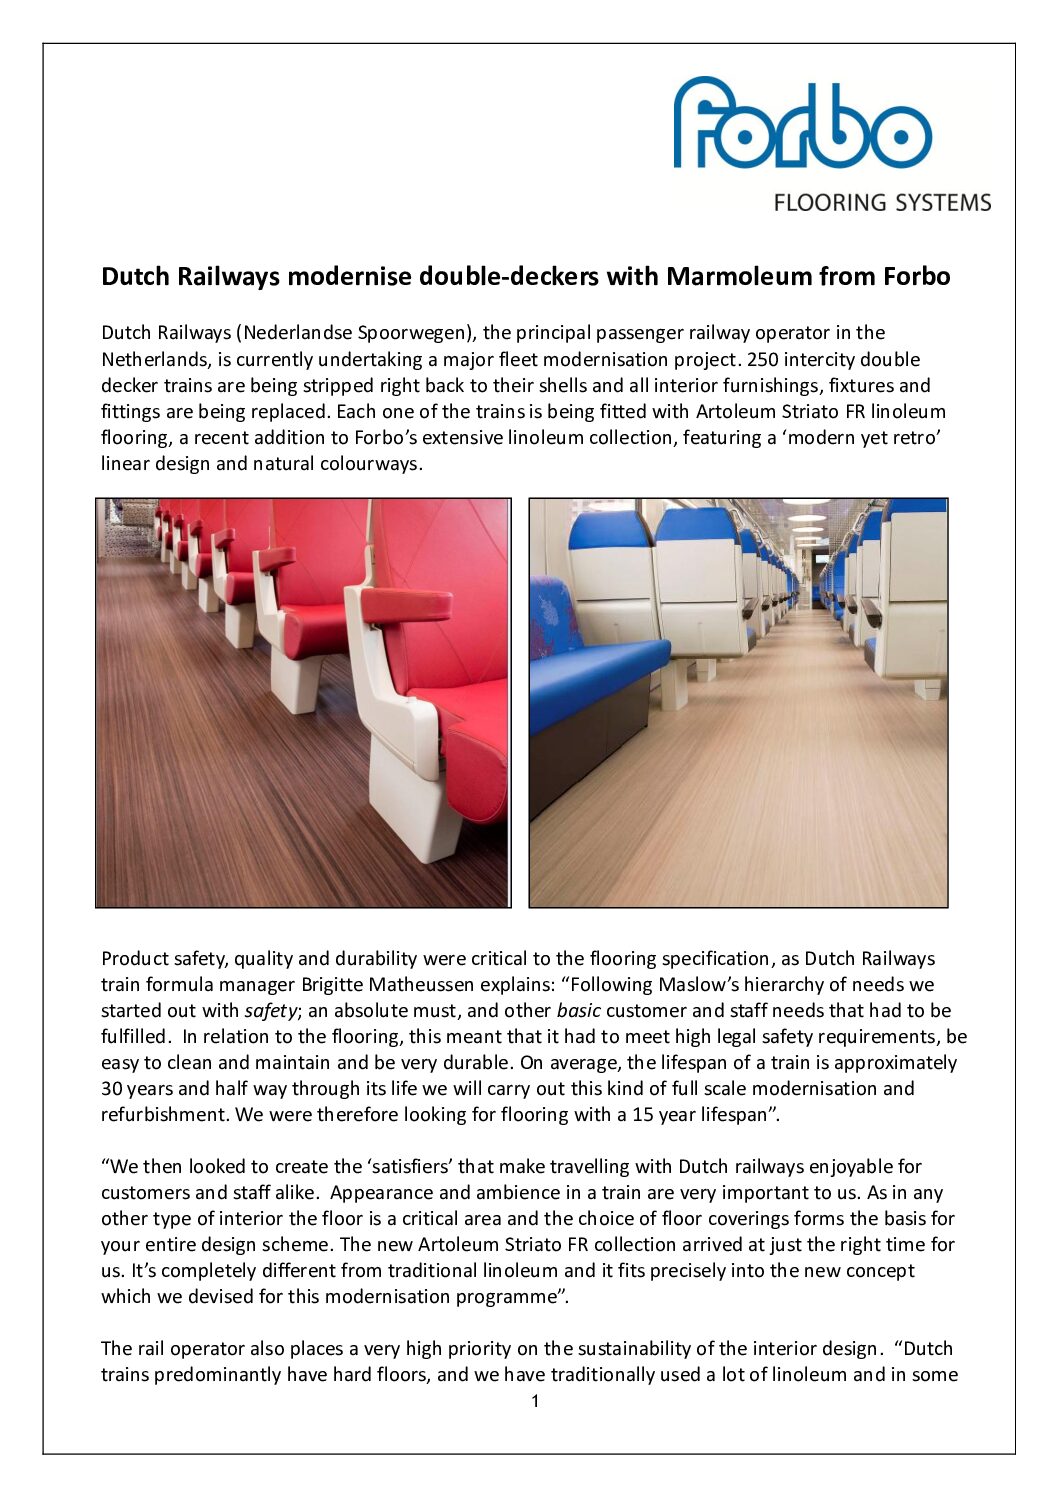 Forbo Flooring – Dutch Railways Case Study